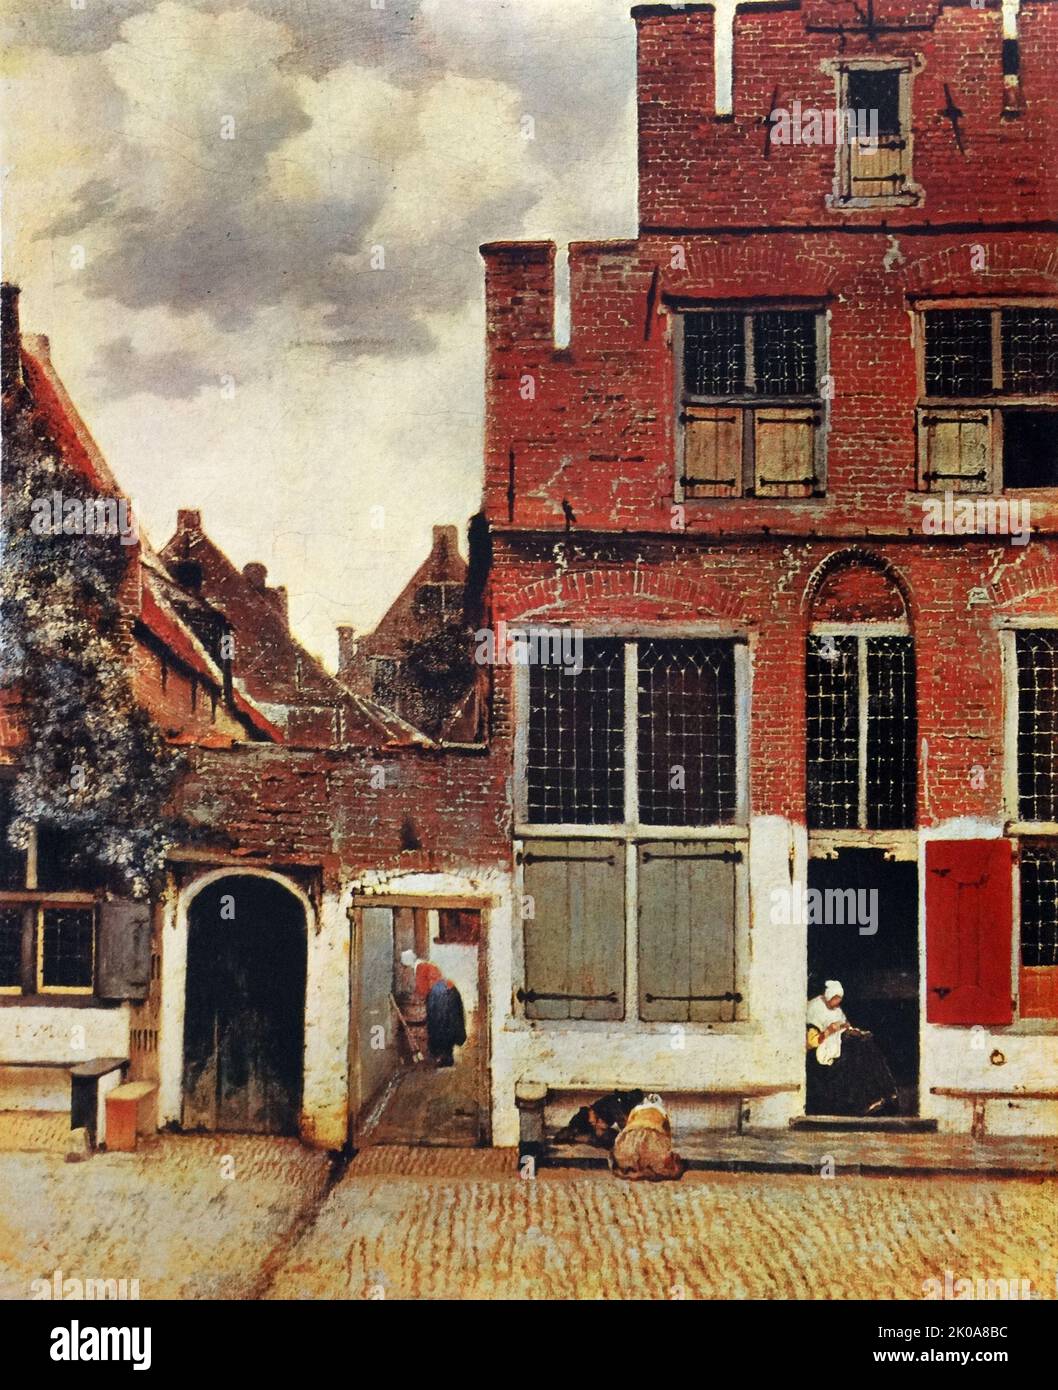 Gemälde des niederländischen Malers Jan Vermeer. Johannes Vermeer (Oktober 1632 - Dezember 1675) war ein niederländischer Barockmaler, der sich auf häusliche Innenräume des bürgerlichen Lebens spezialisierte Stockfoto